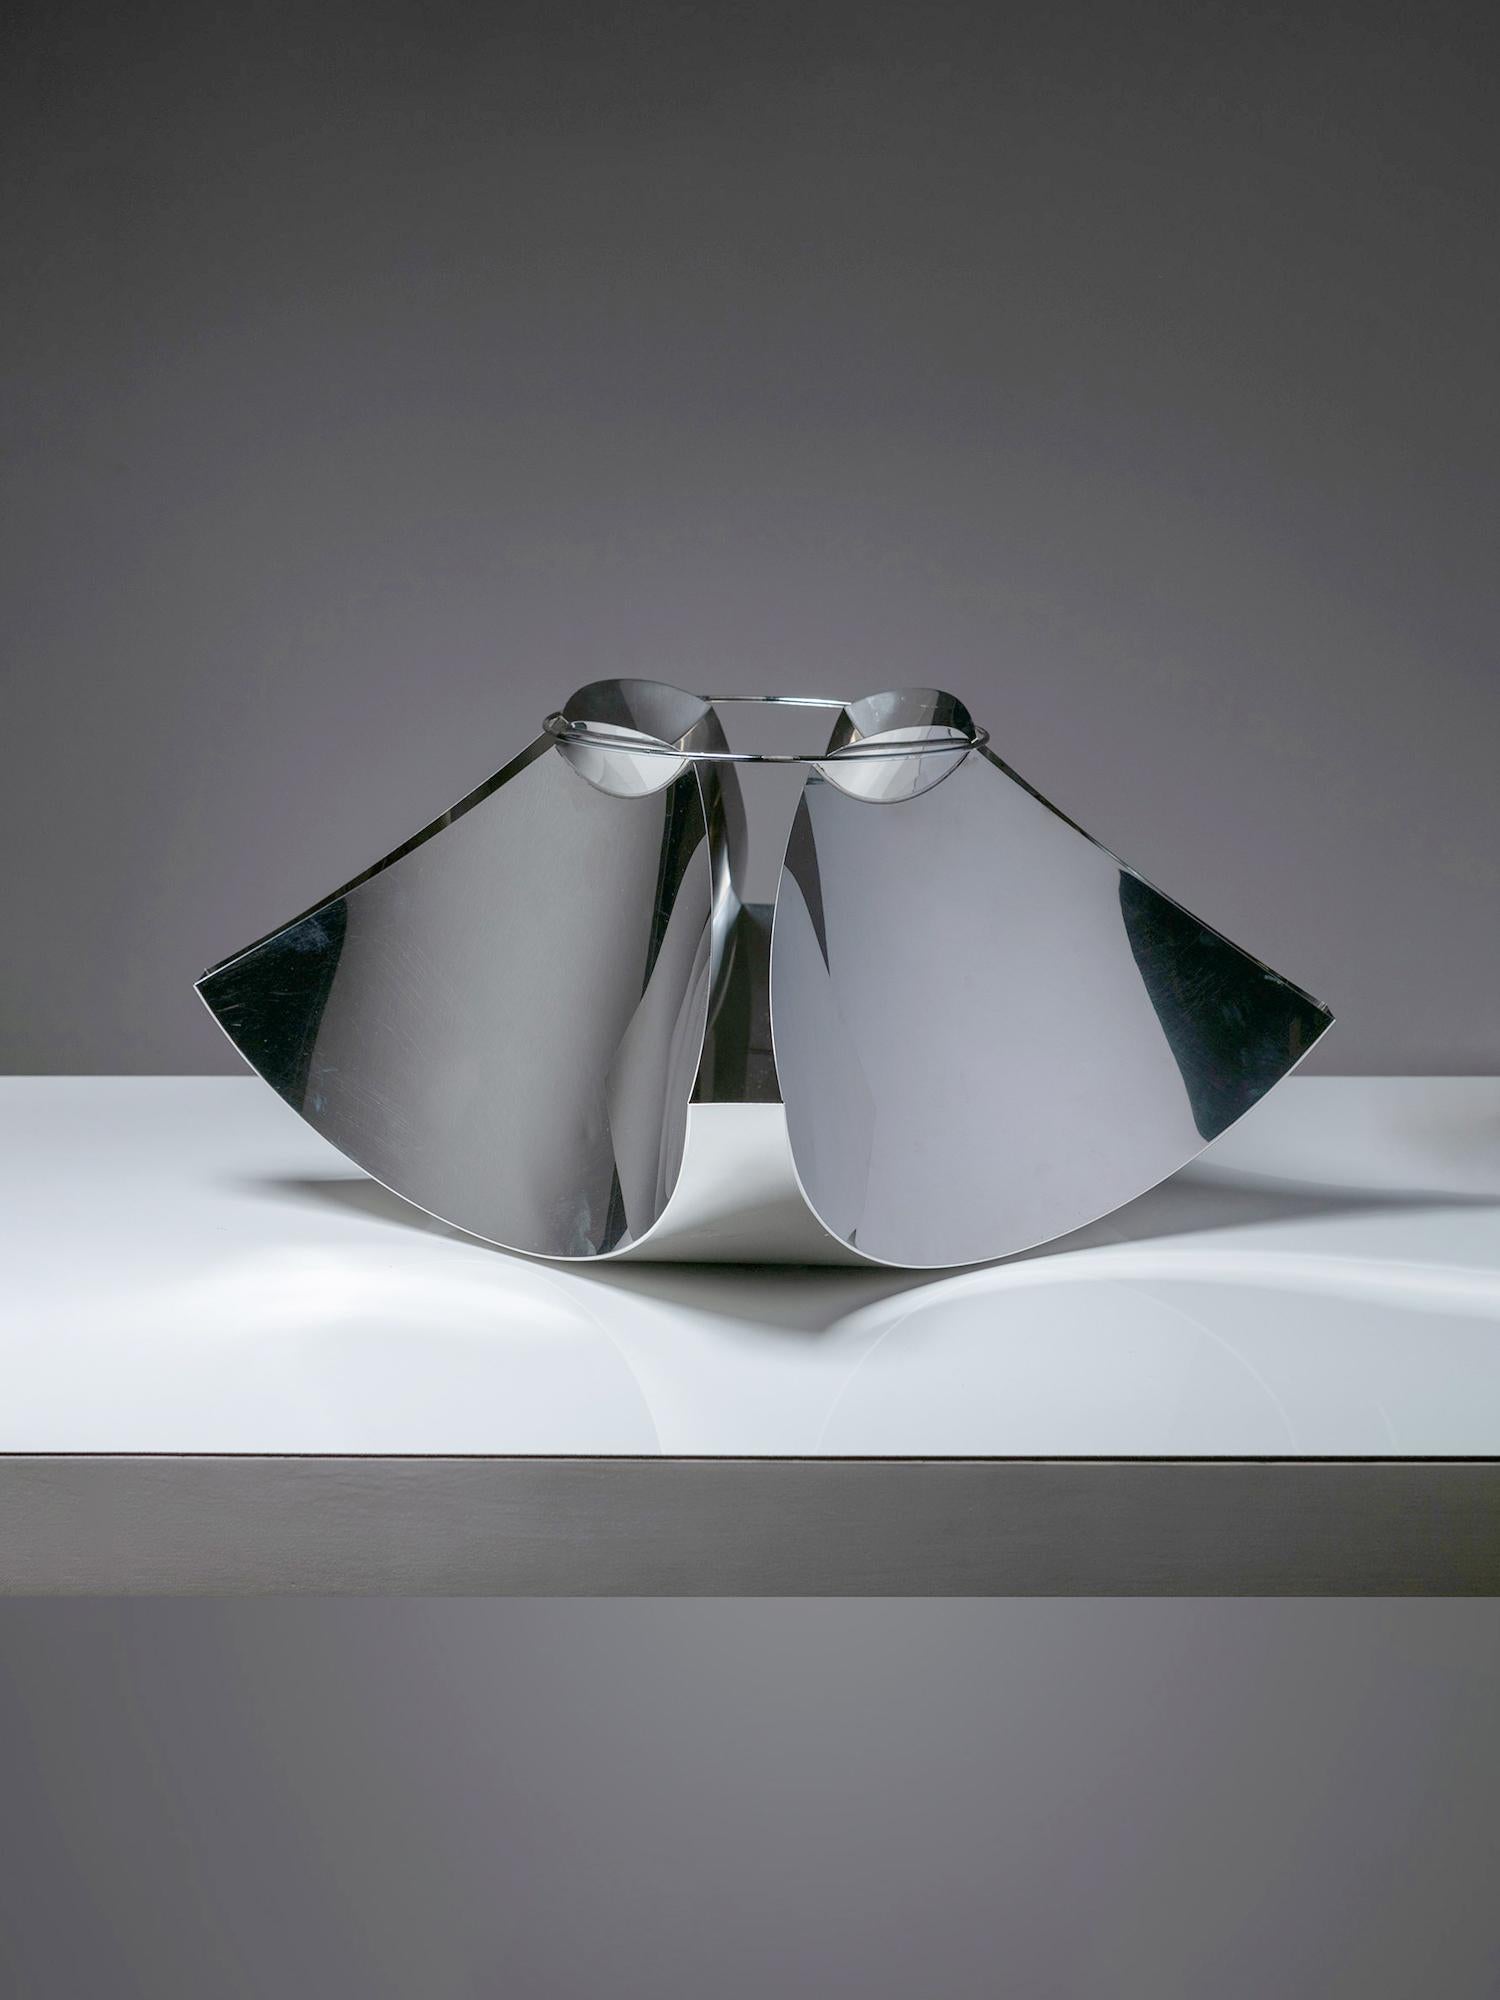 Mittelstück aus Edelstahl von Gian Casè für Robots.
Im Origami-Stil gefaltetes Metallblech, das durch einen oberen Metallring in Spannung gehalten wird.